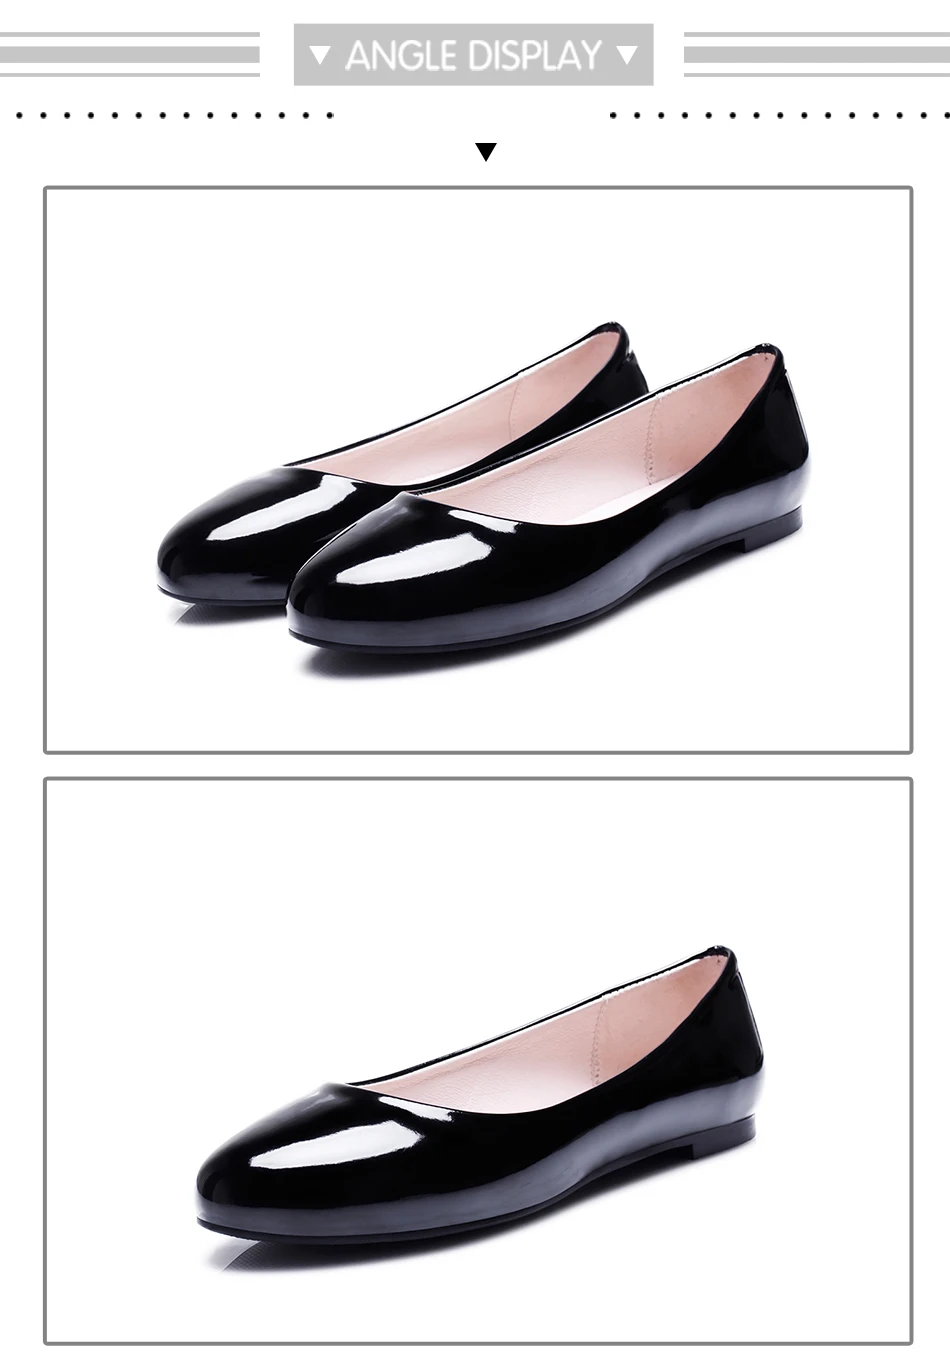 BYQDY/женские сандалии на плоской подошве без застежки; повседневная обувь; модные Лоферы Mary Jane; женские удобные туфли на плоской подошве с круглым носком размера плюс 34-48